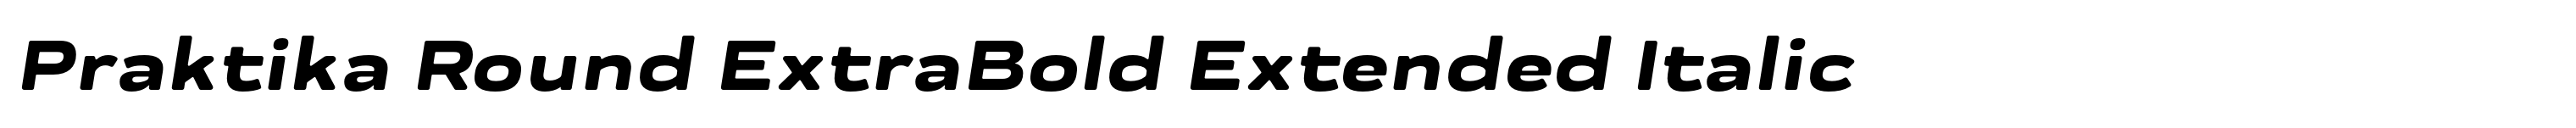 Praktika Round ExtraBold Extended Italic